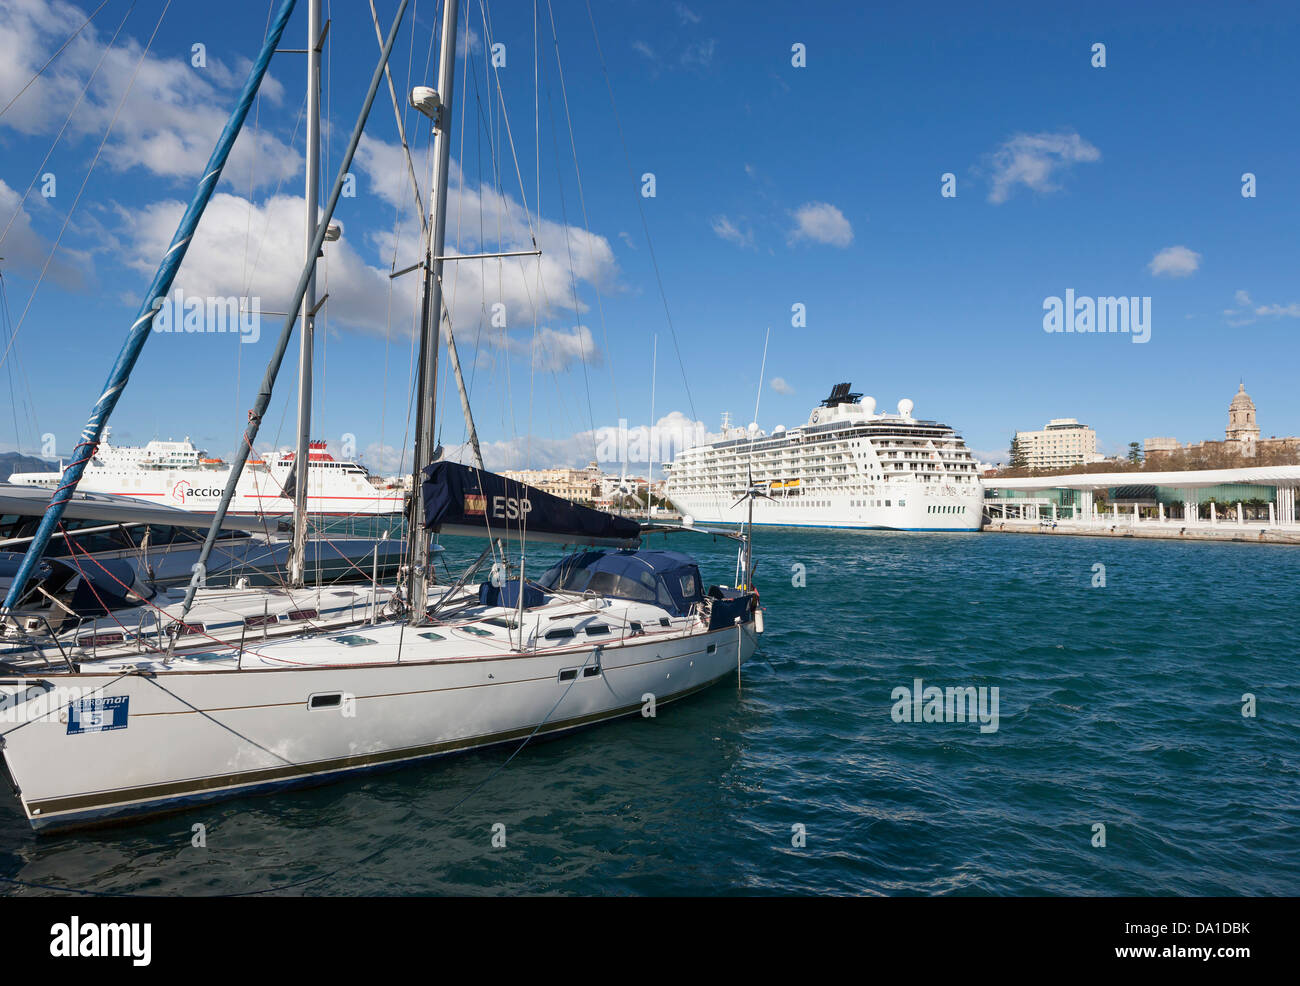 Espagne, Malaga, vue d'un paquebot de croisière au port Banque D'Images